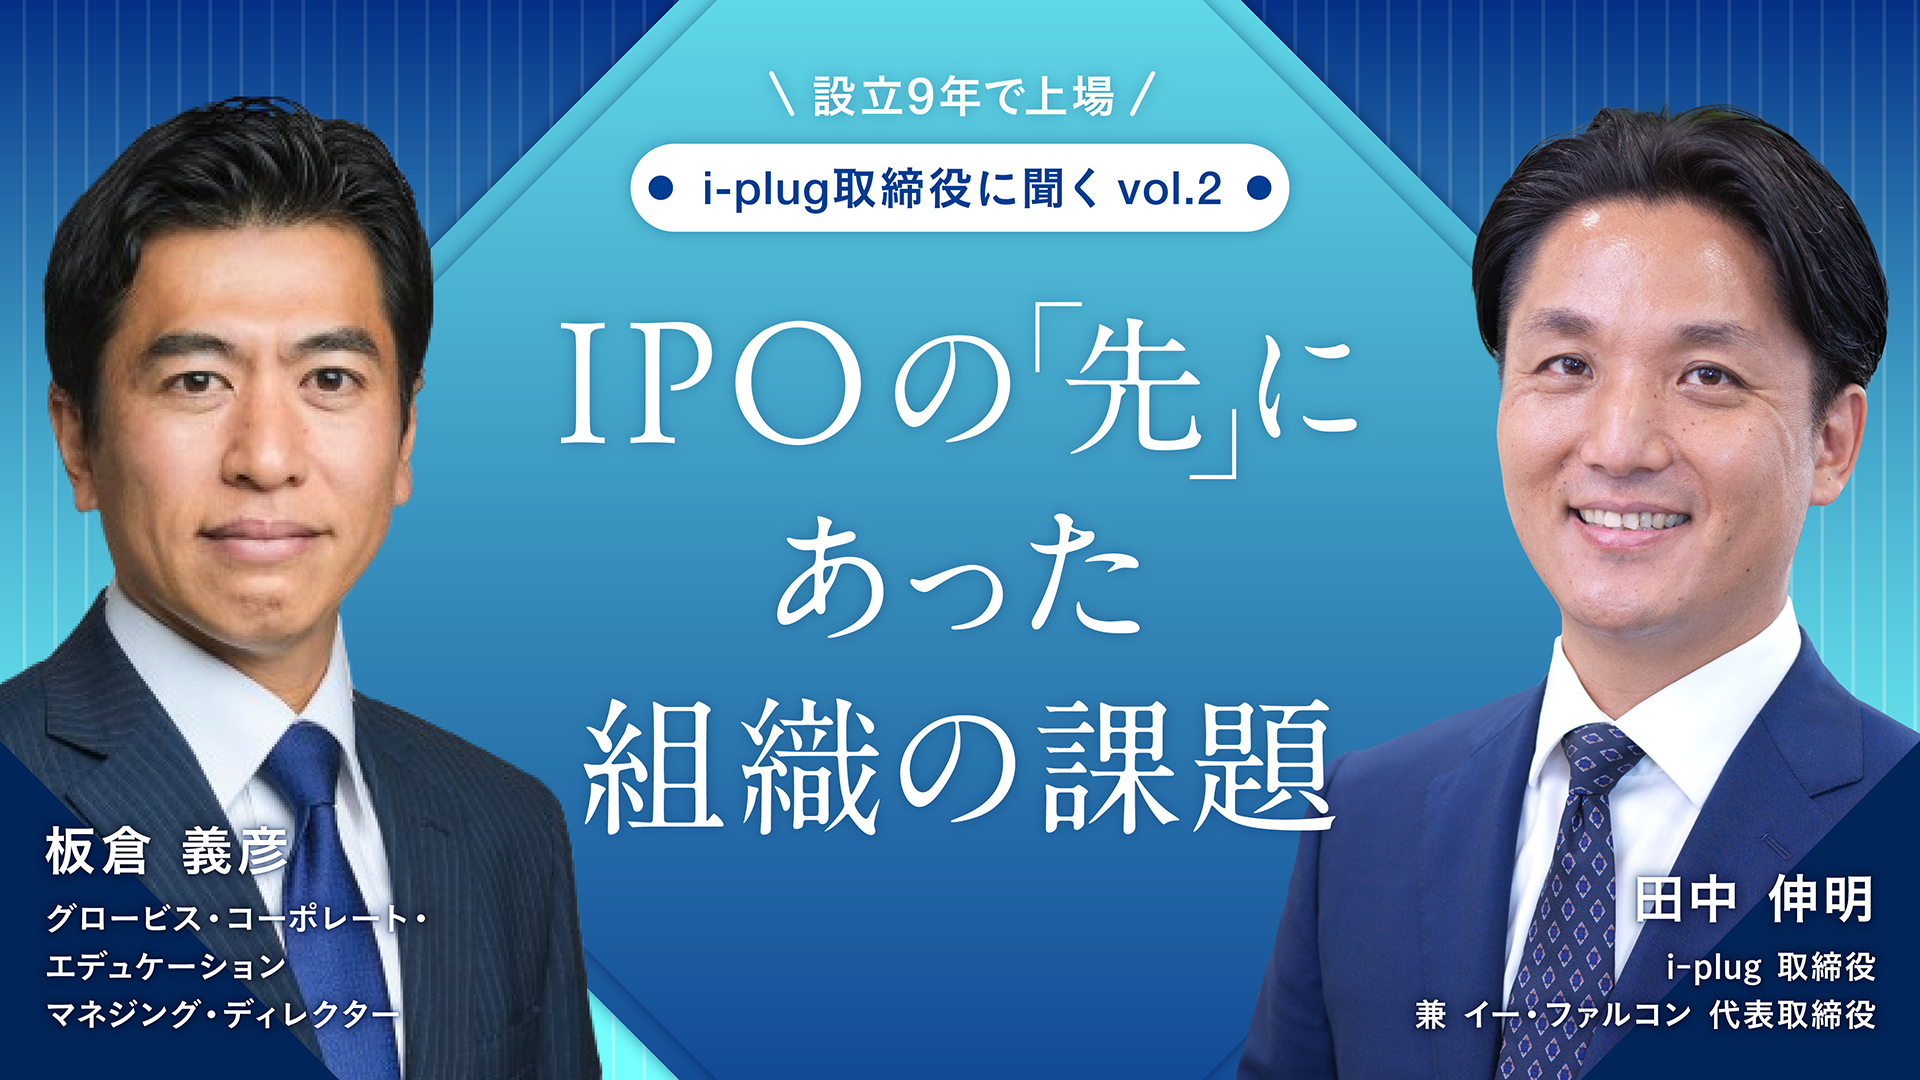 IPOの「先」にあった組織の課題――設立9年で上場 i-plug取締役に聞くVol.2